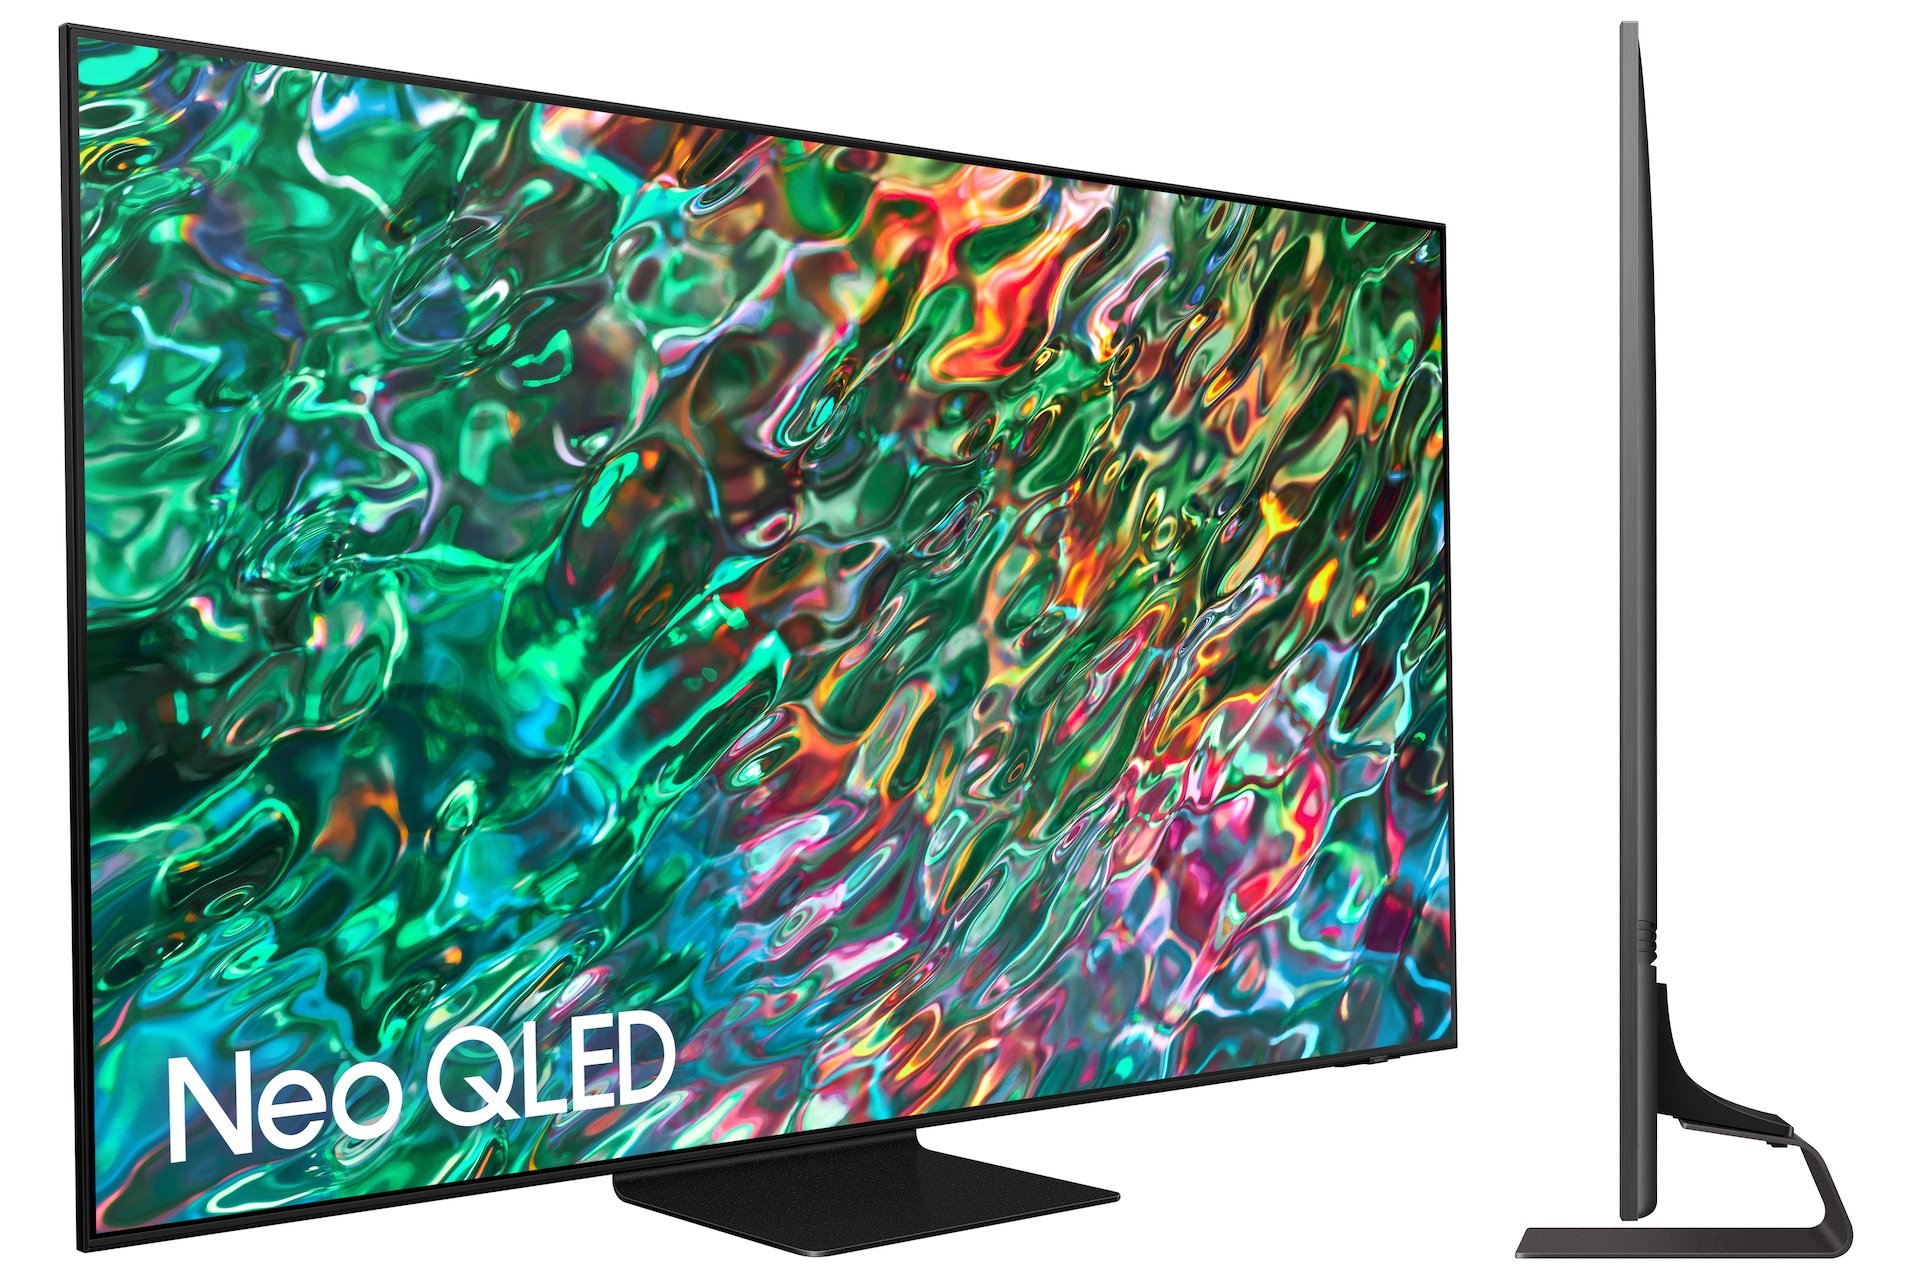 Mando a distancia universal de repuesto para Samsung TV, compatible con  todos los Samsung Frame Serif Crystal UHD Neo QLED OLED 4K 8K Smart TVs